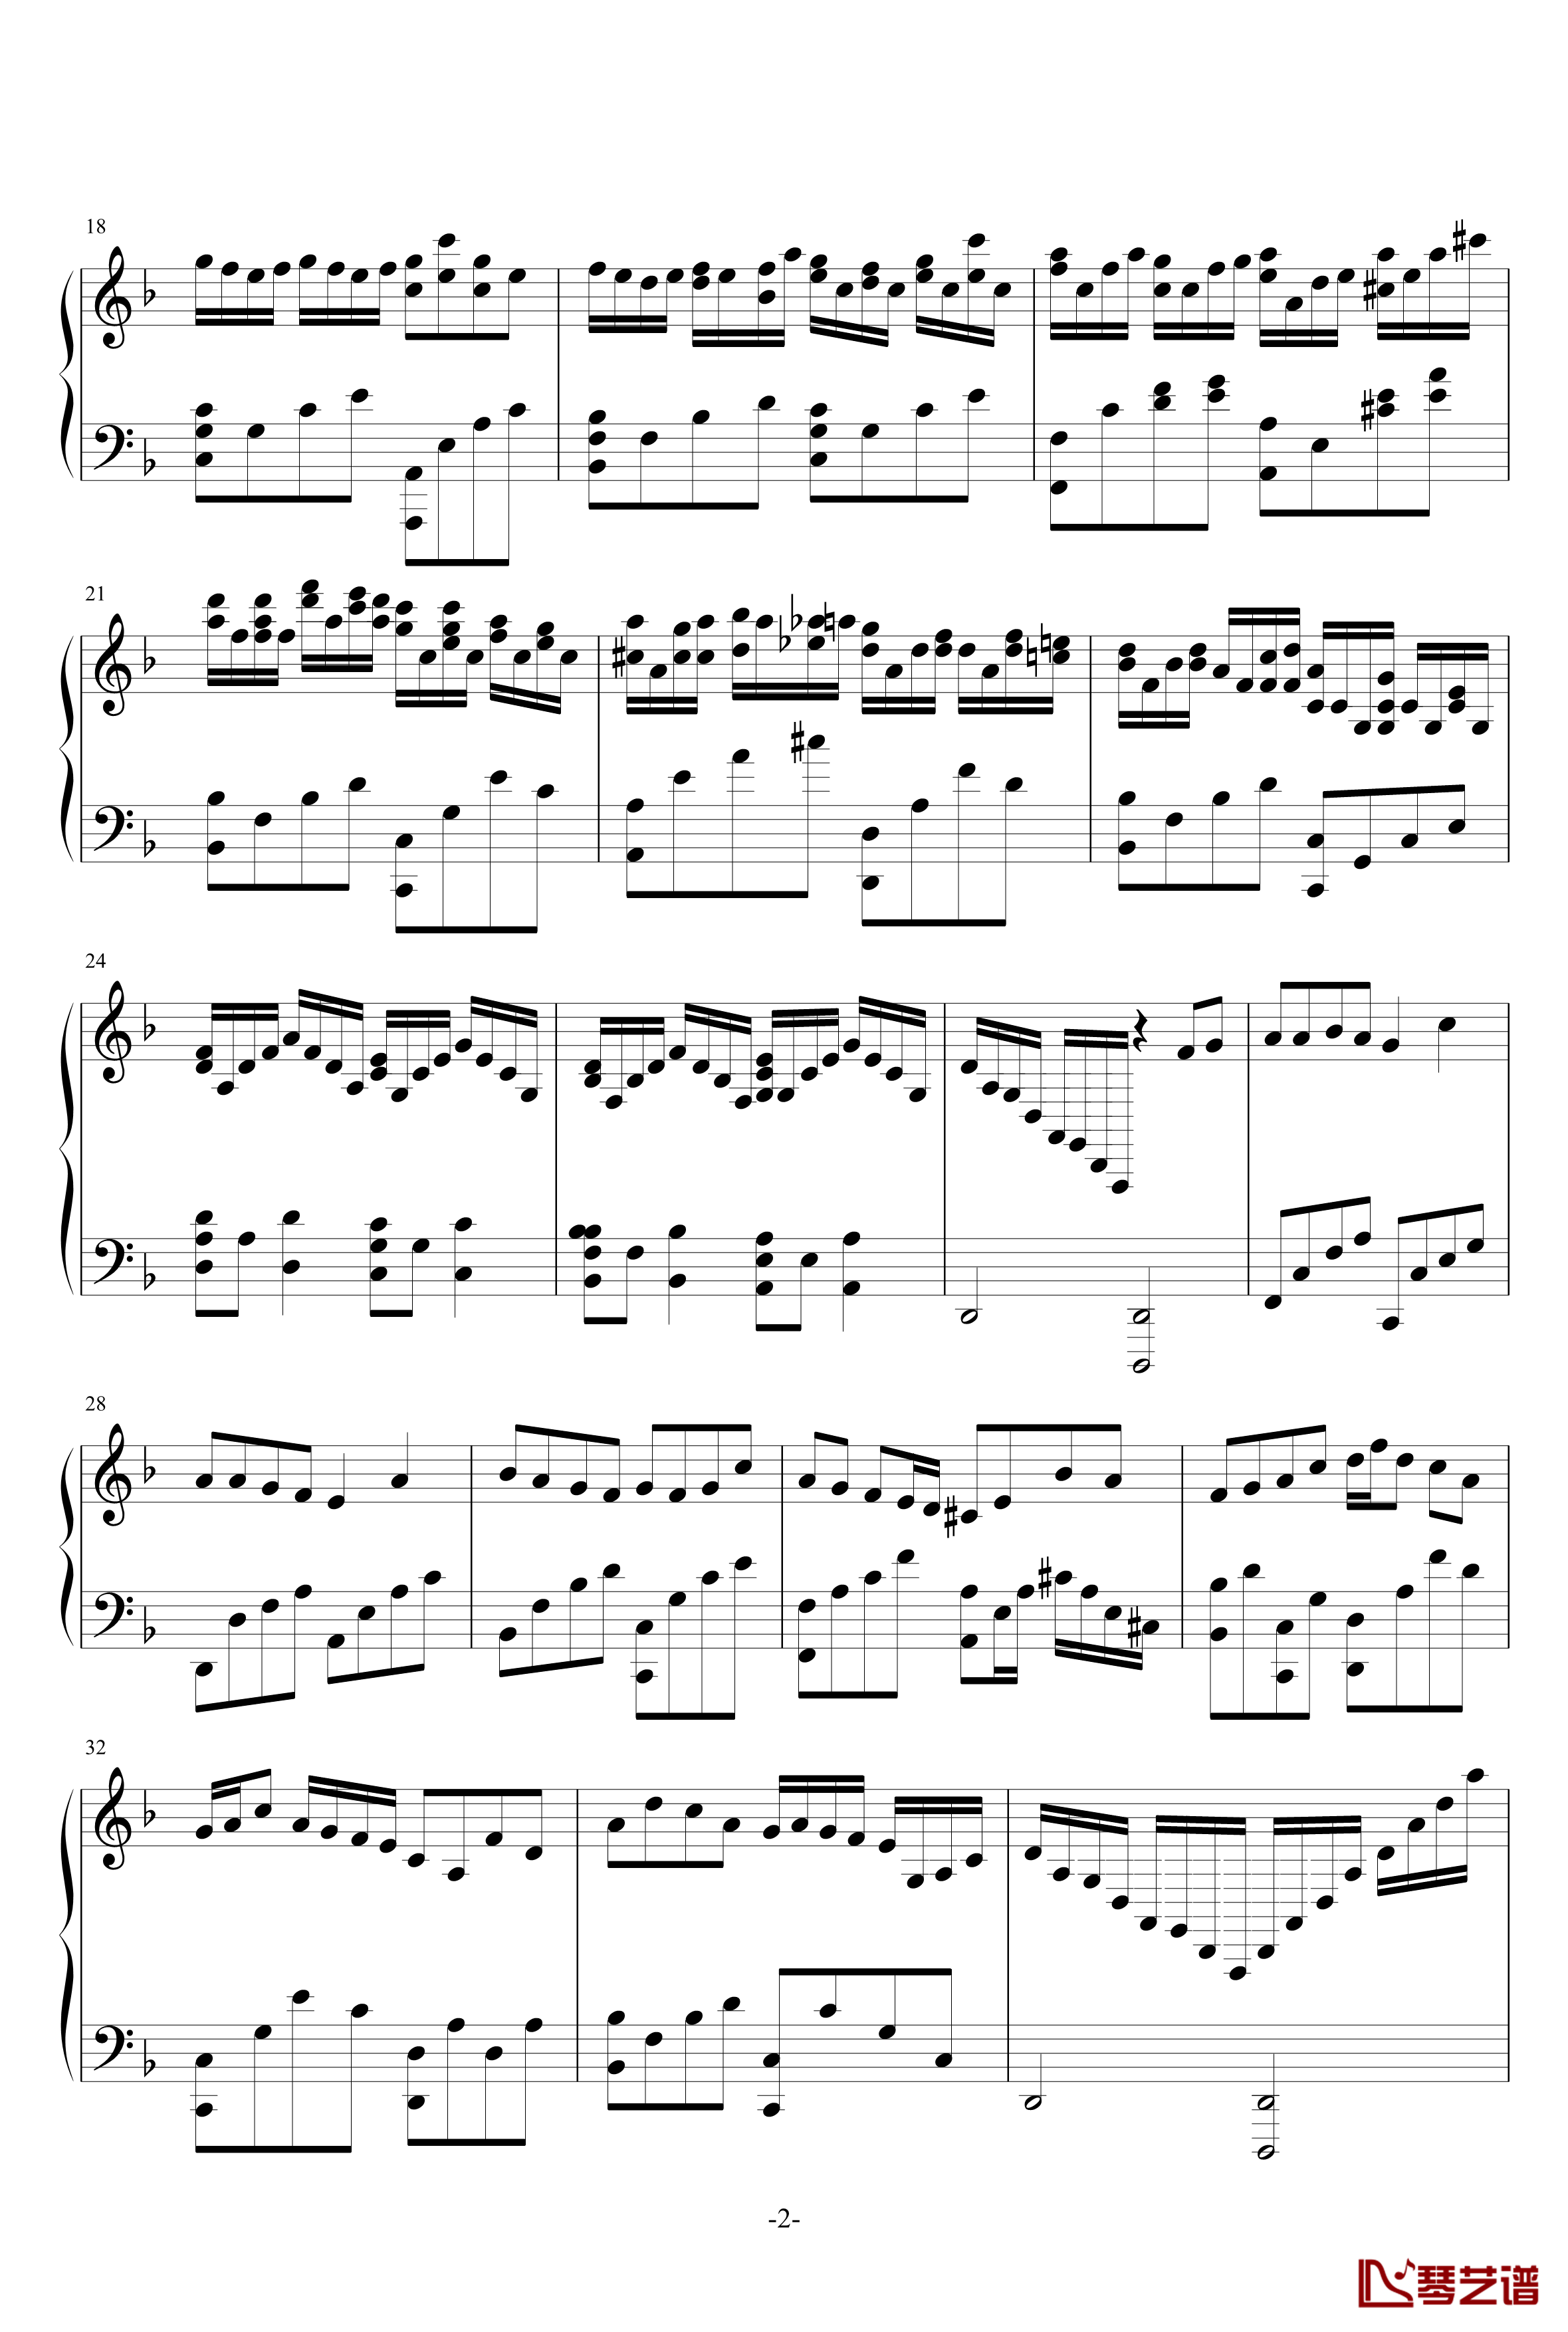 梦幻曲11荏苒钢琴谱-as21342